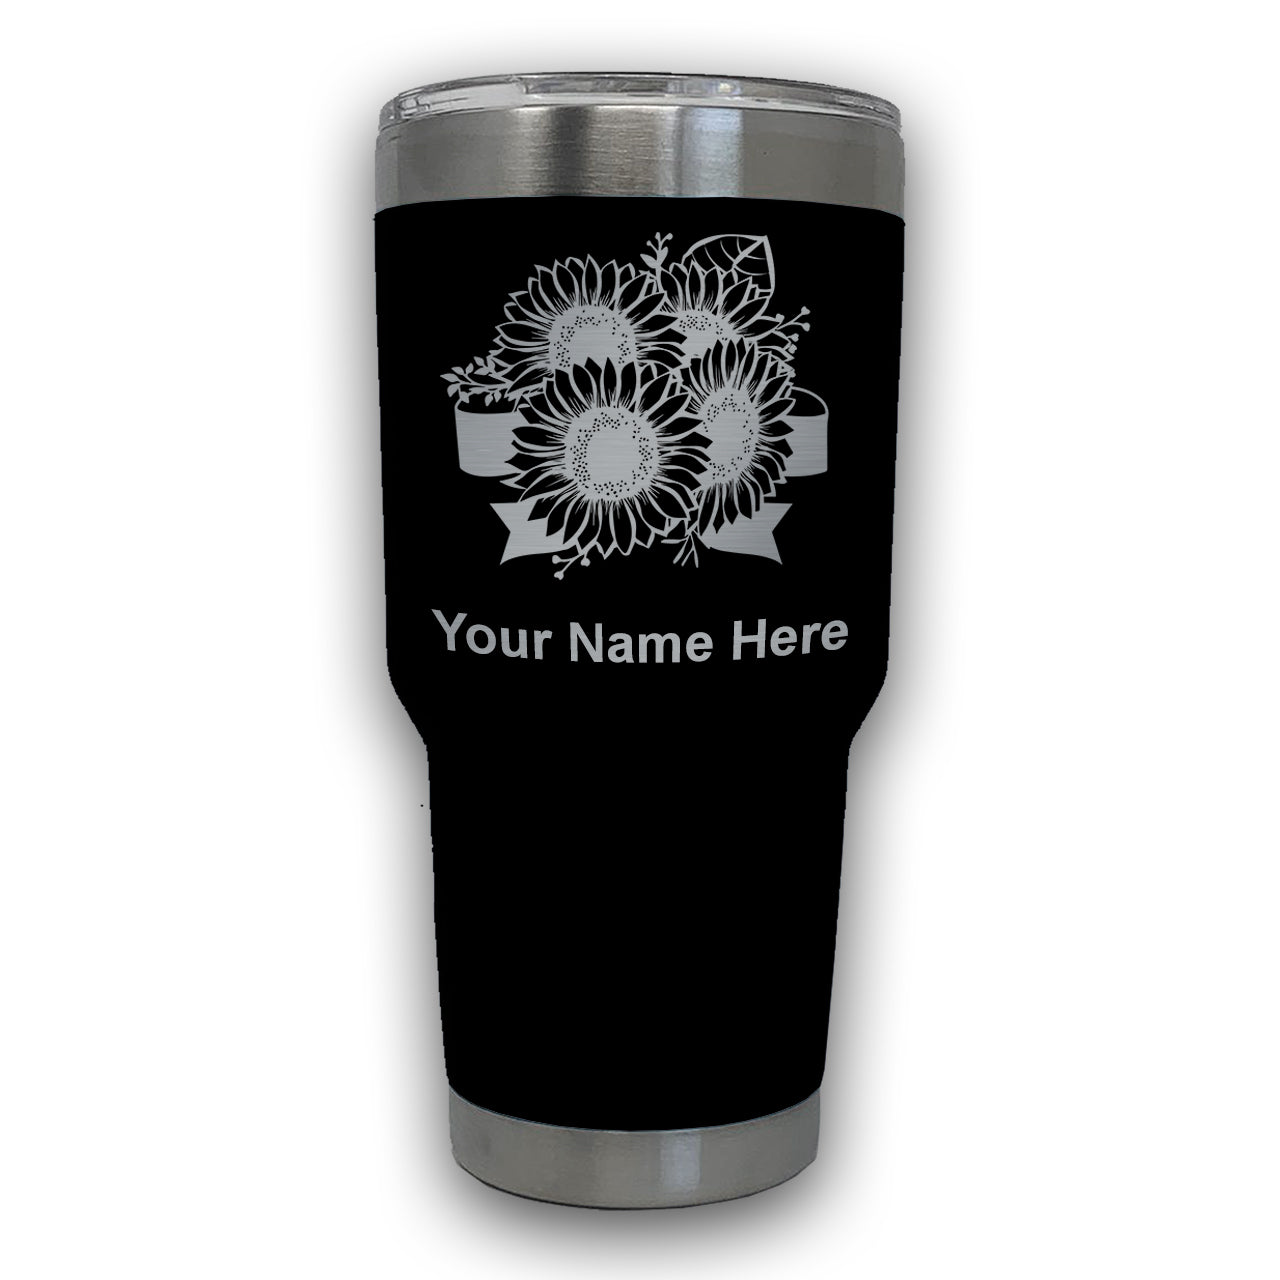 LaserGram 30oz Tumbler Mug, Sunflowers, Personalized Engraving Included